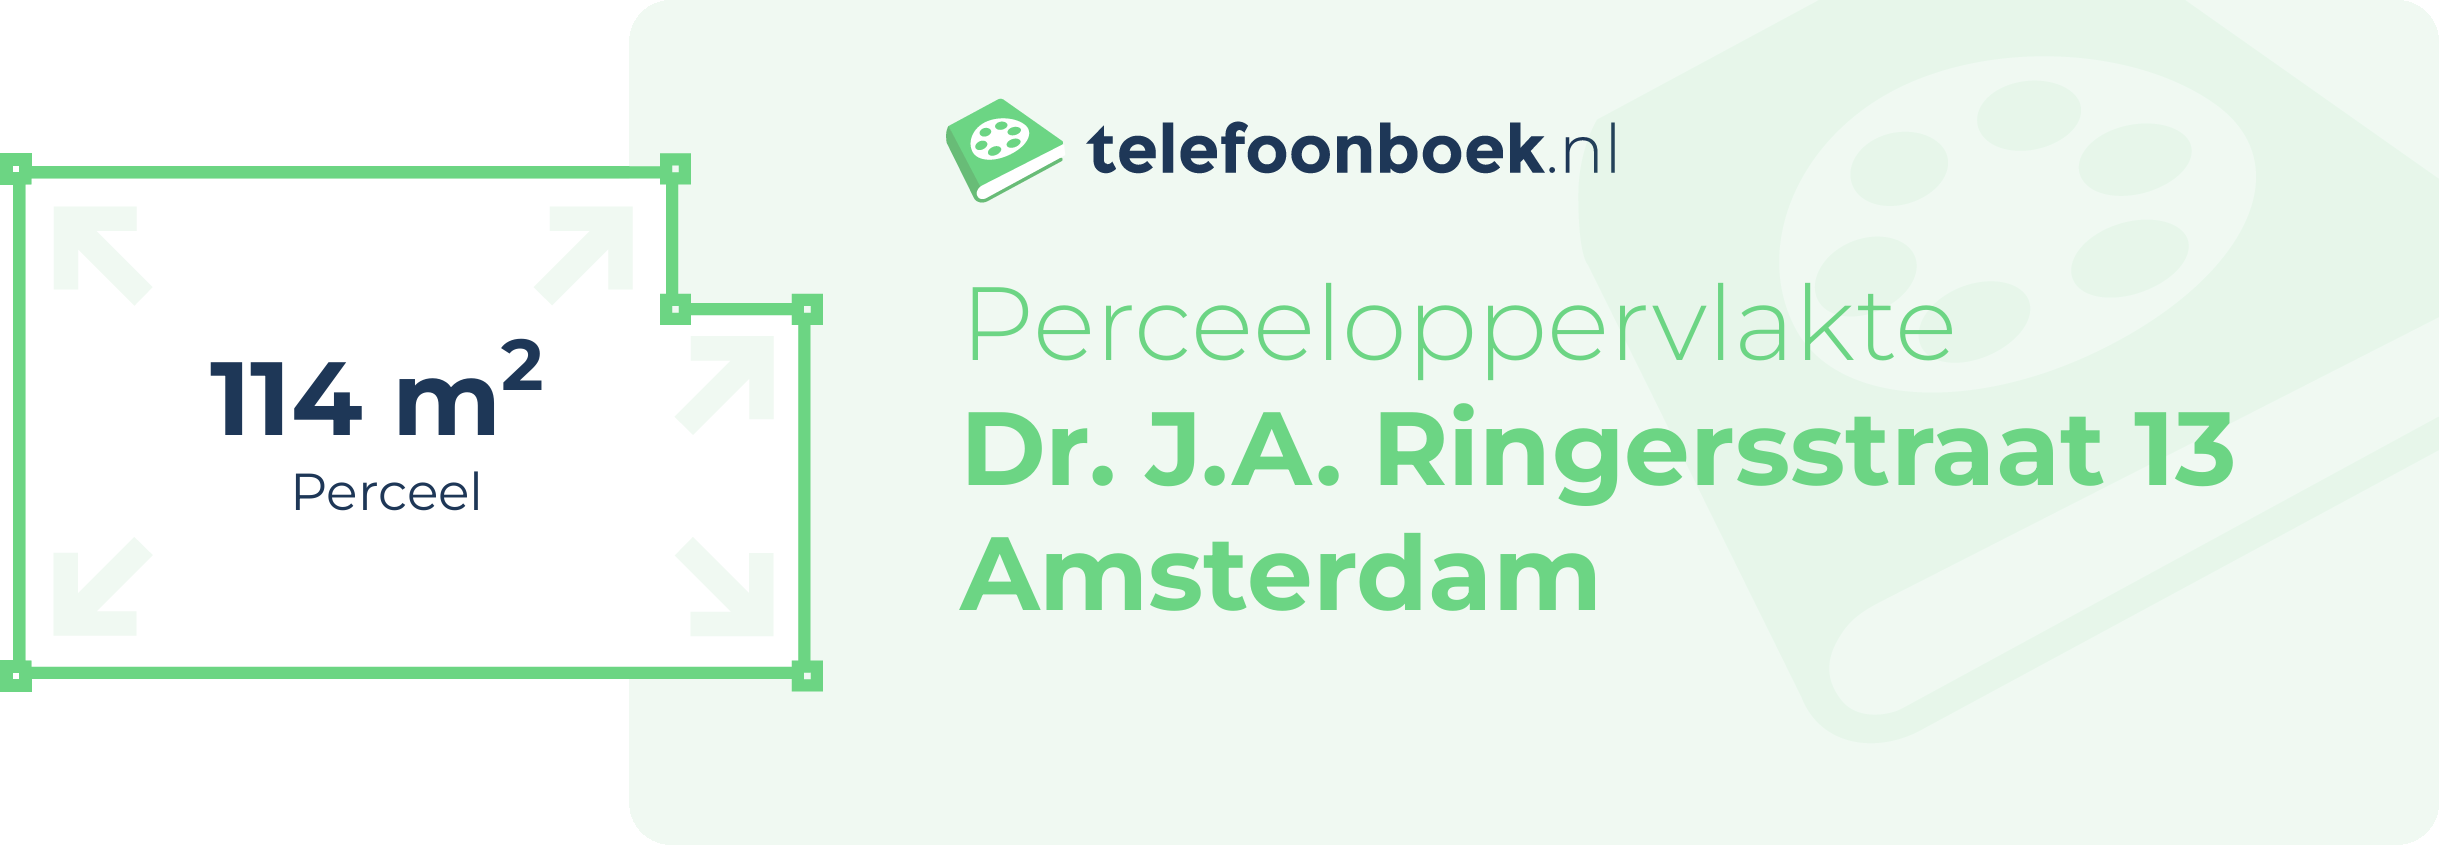 Perceeloppervlakte Dr. J.A. Ringersstraat 13 Amsterdam